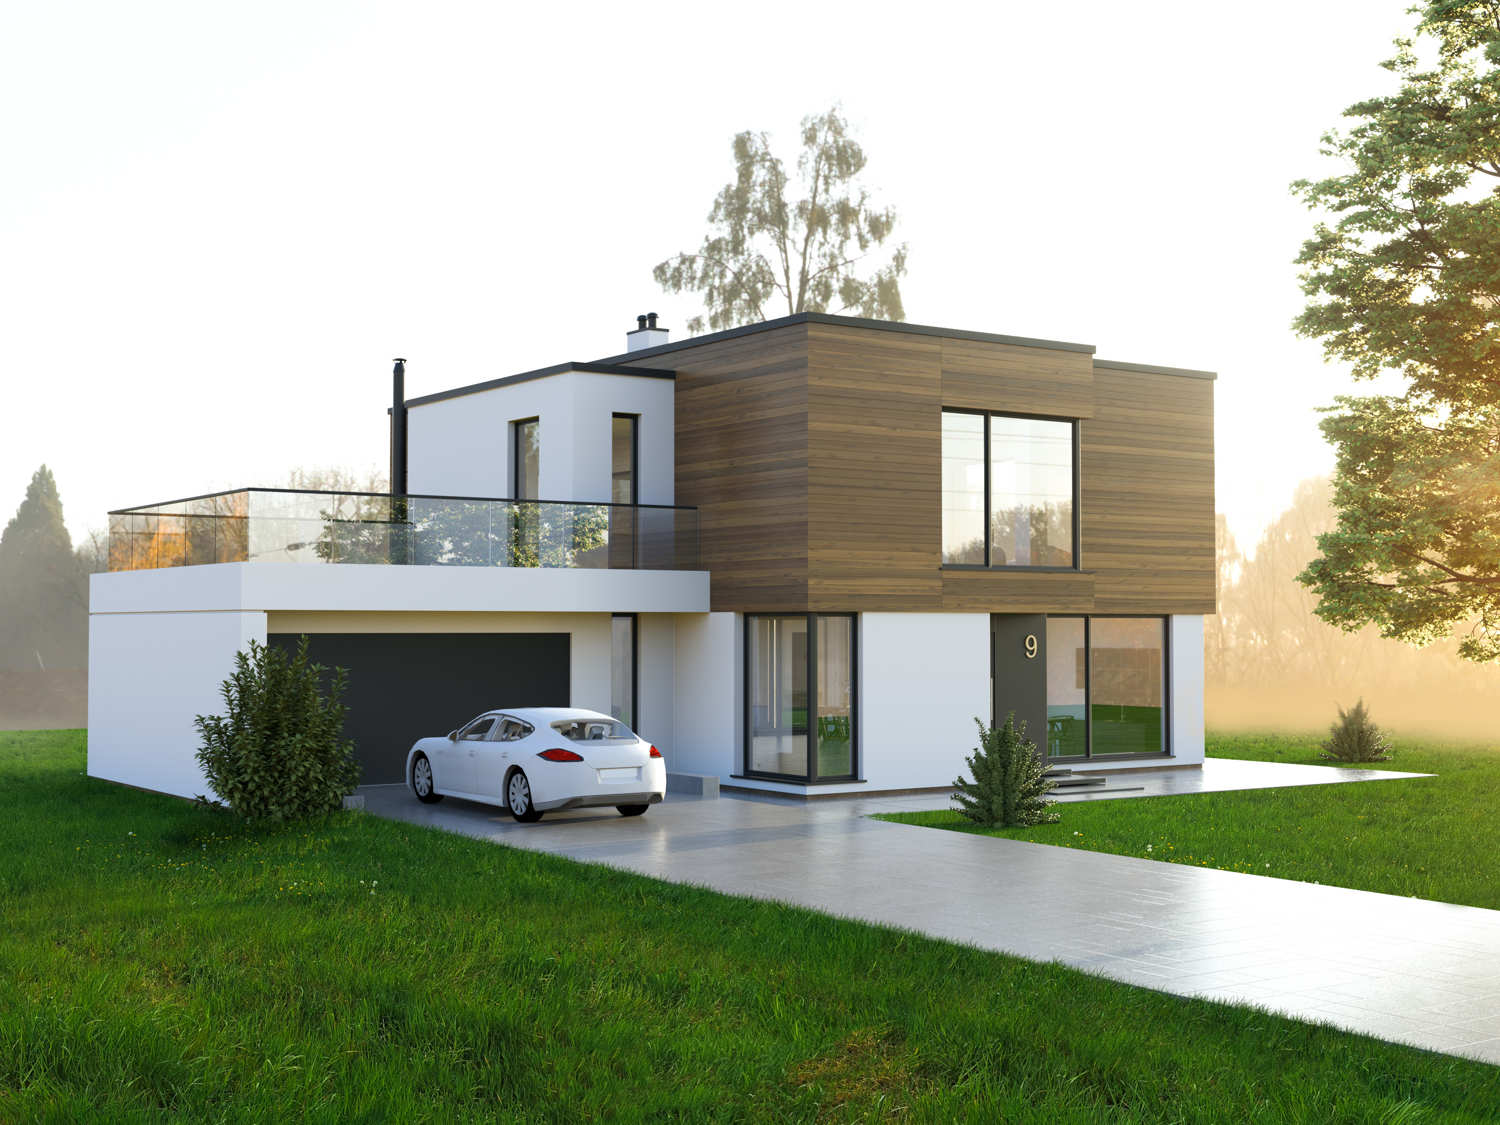 Dieses Architektenhaus mit über 250 m² Grundriss - schlüsselfertig bauen im Raum Hamburg, Kiel, Neumünster, Norderstedt